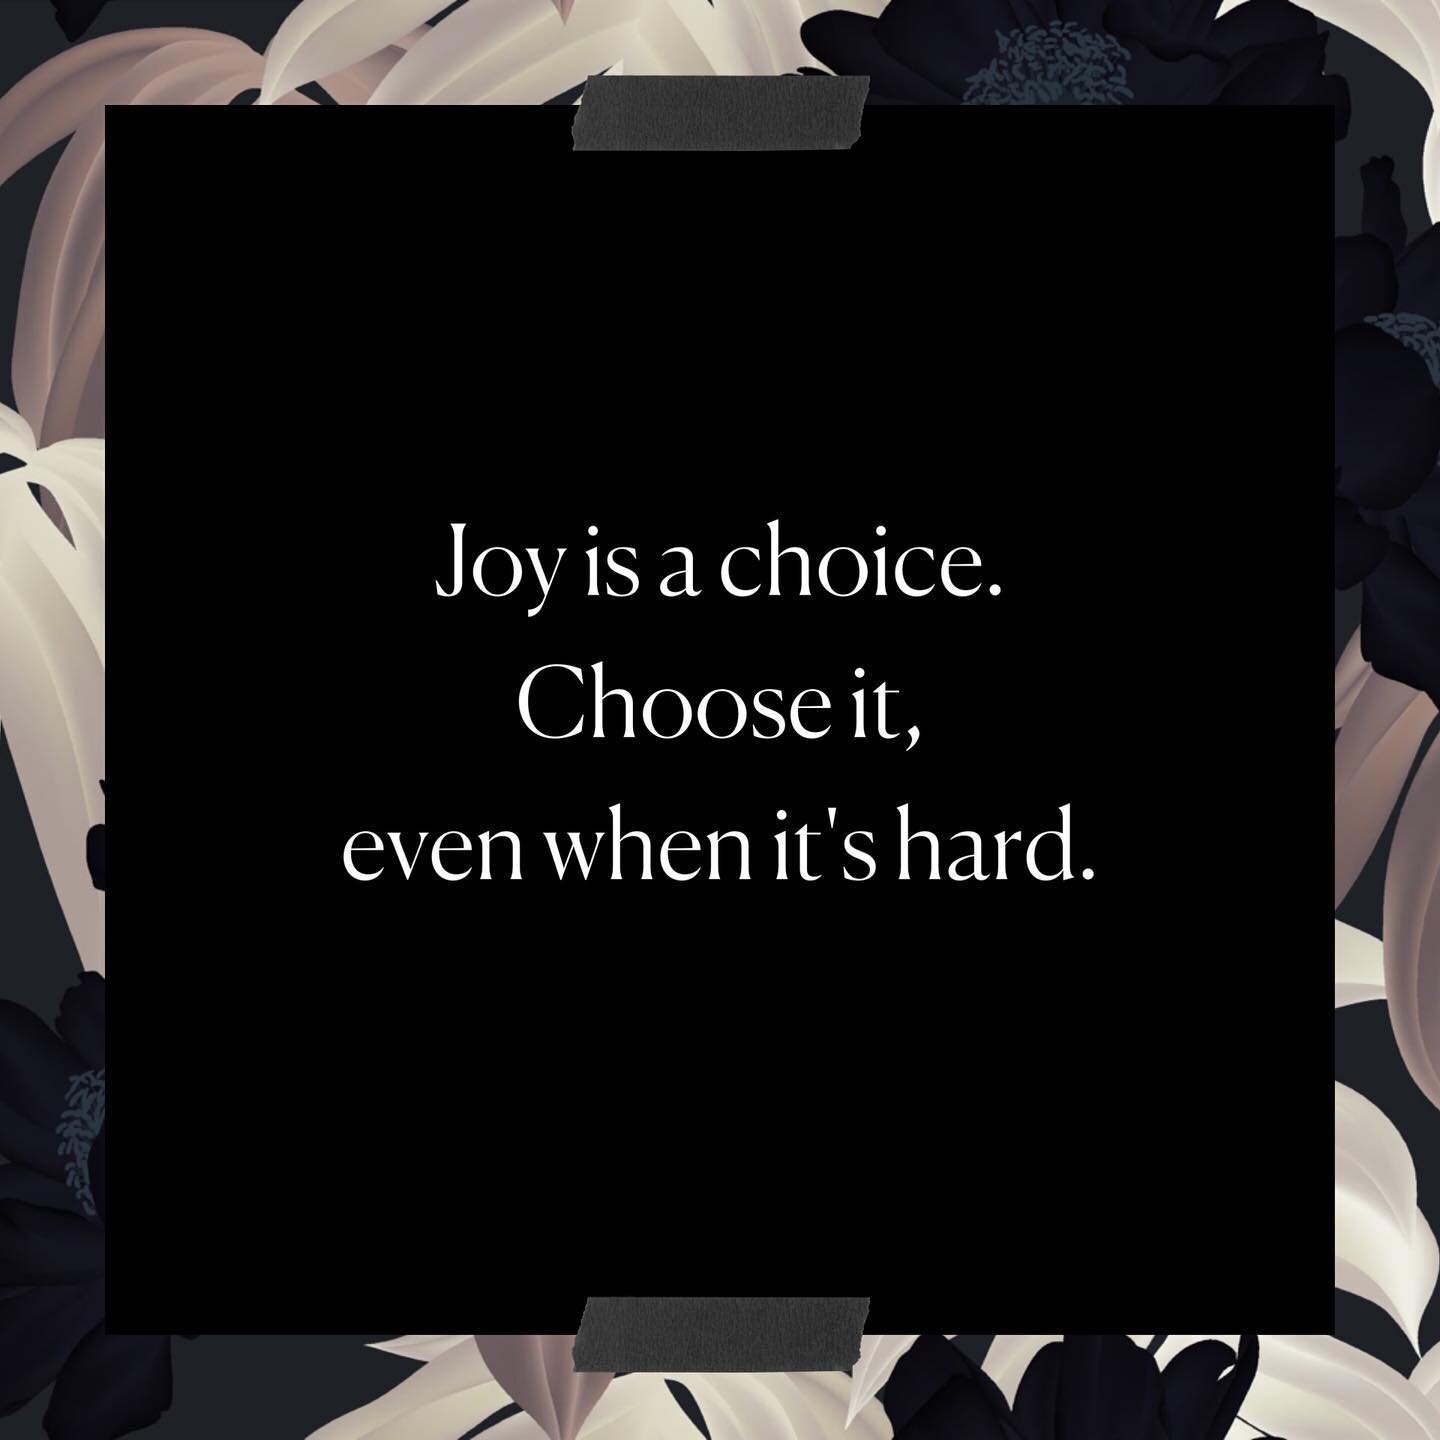 Choose joy.